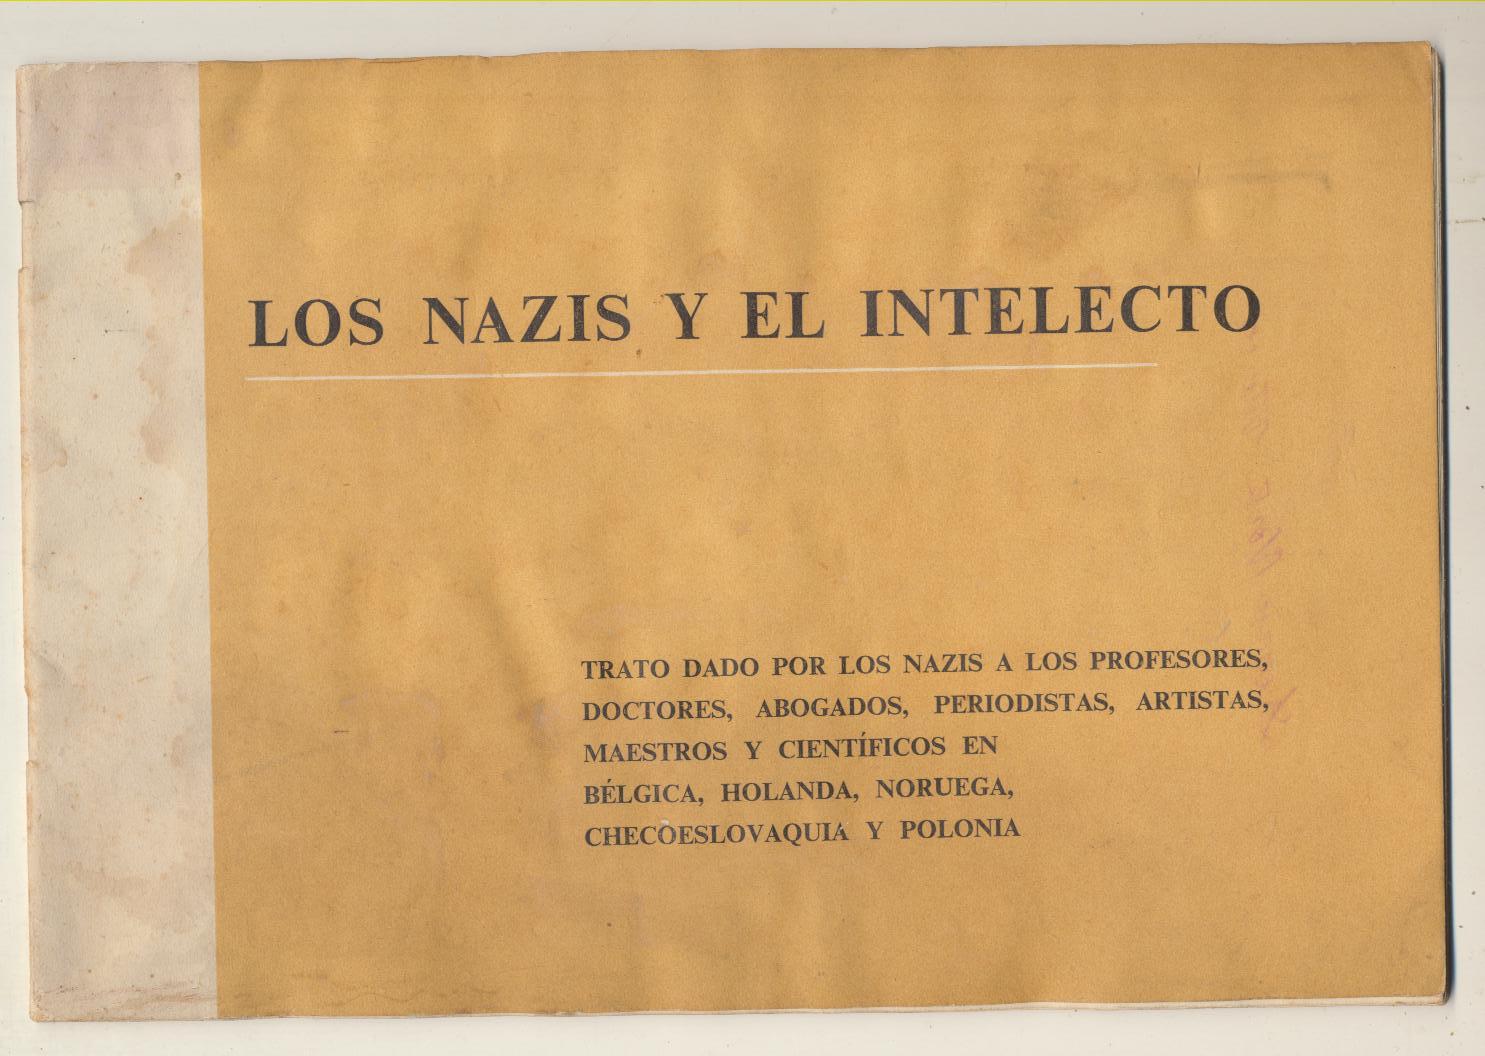 Los Nazis y el Intelecto. Trato dado por los nazis a los profesores, doctores, abogados…